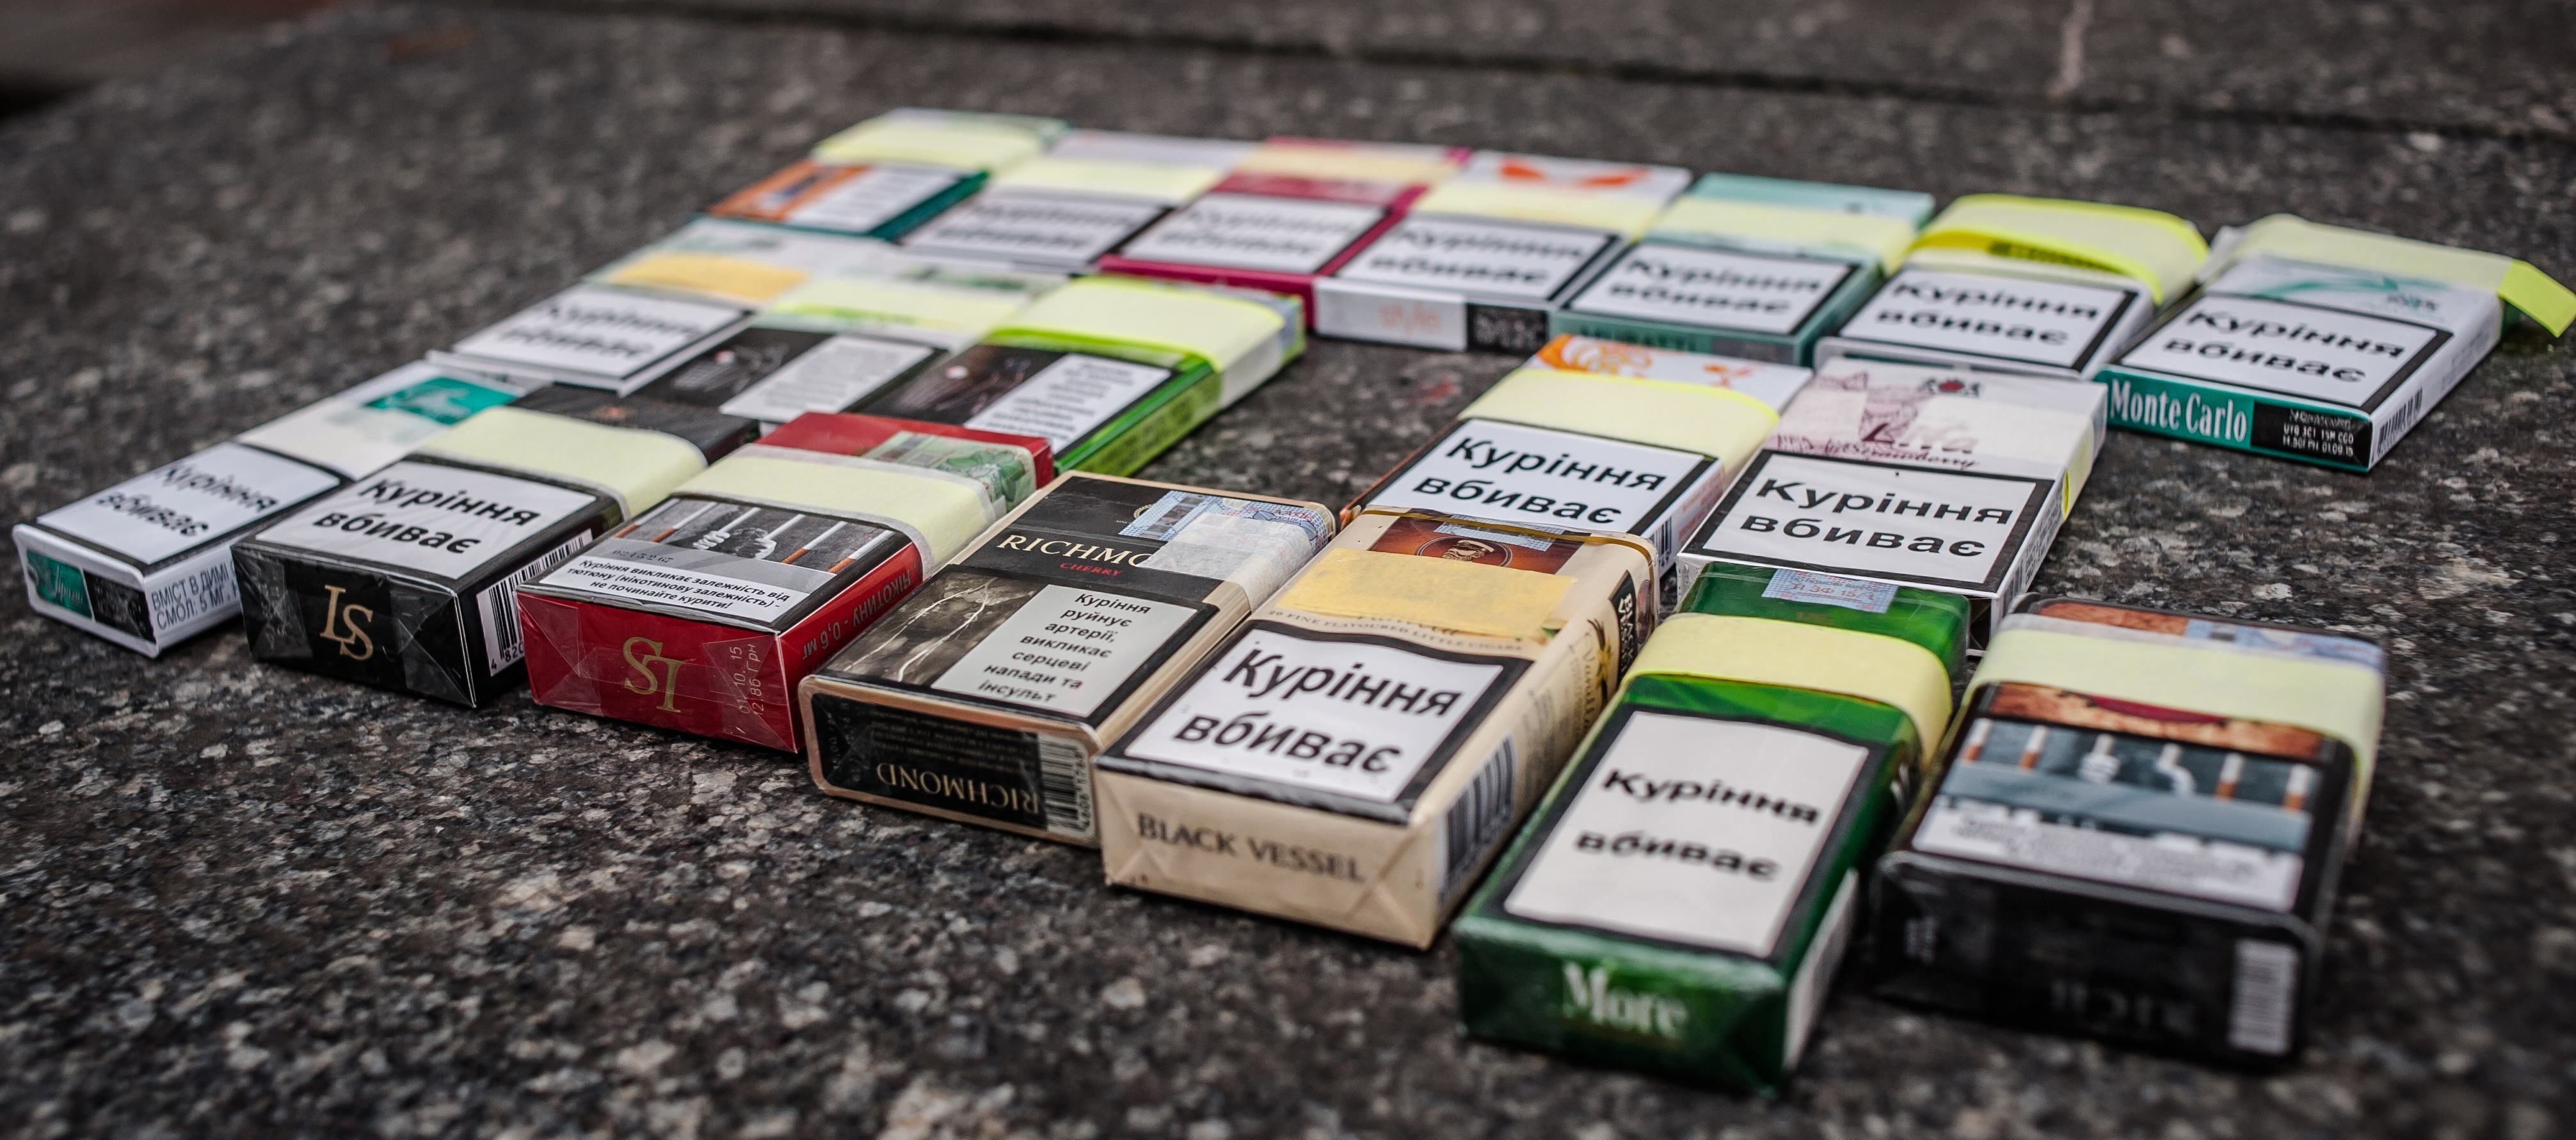 Скільки незабаром коштуватиме найдешевша пачка цигарок